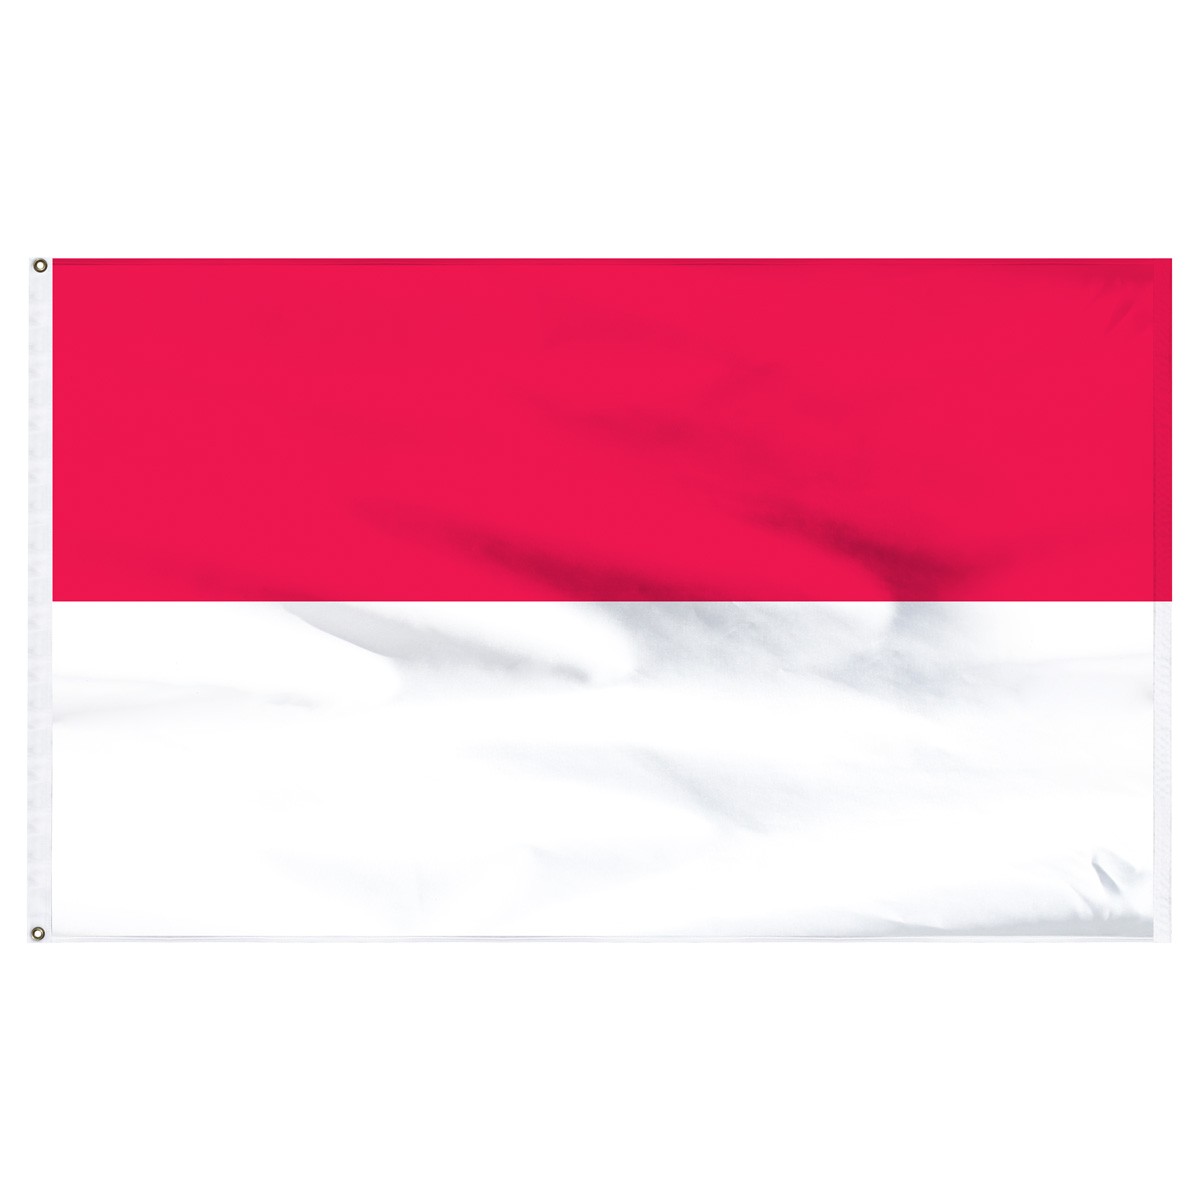 Indonesia Executive Flags